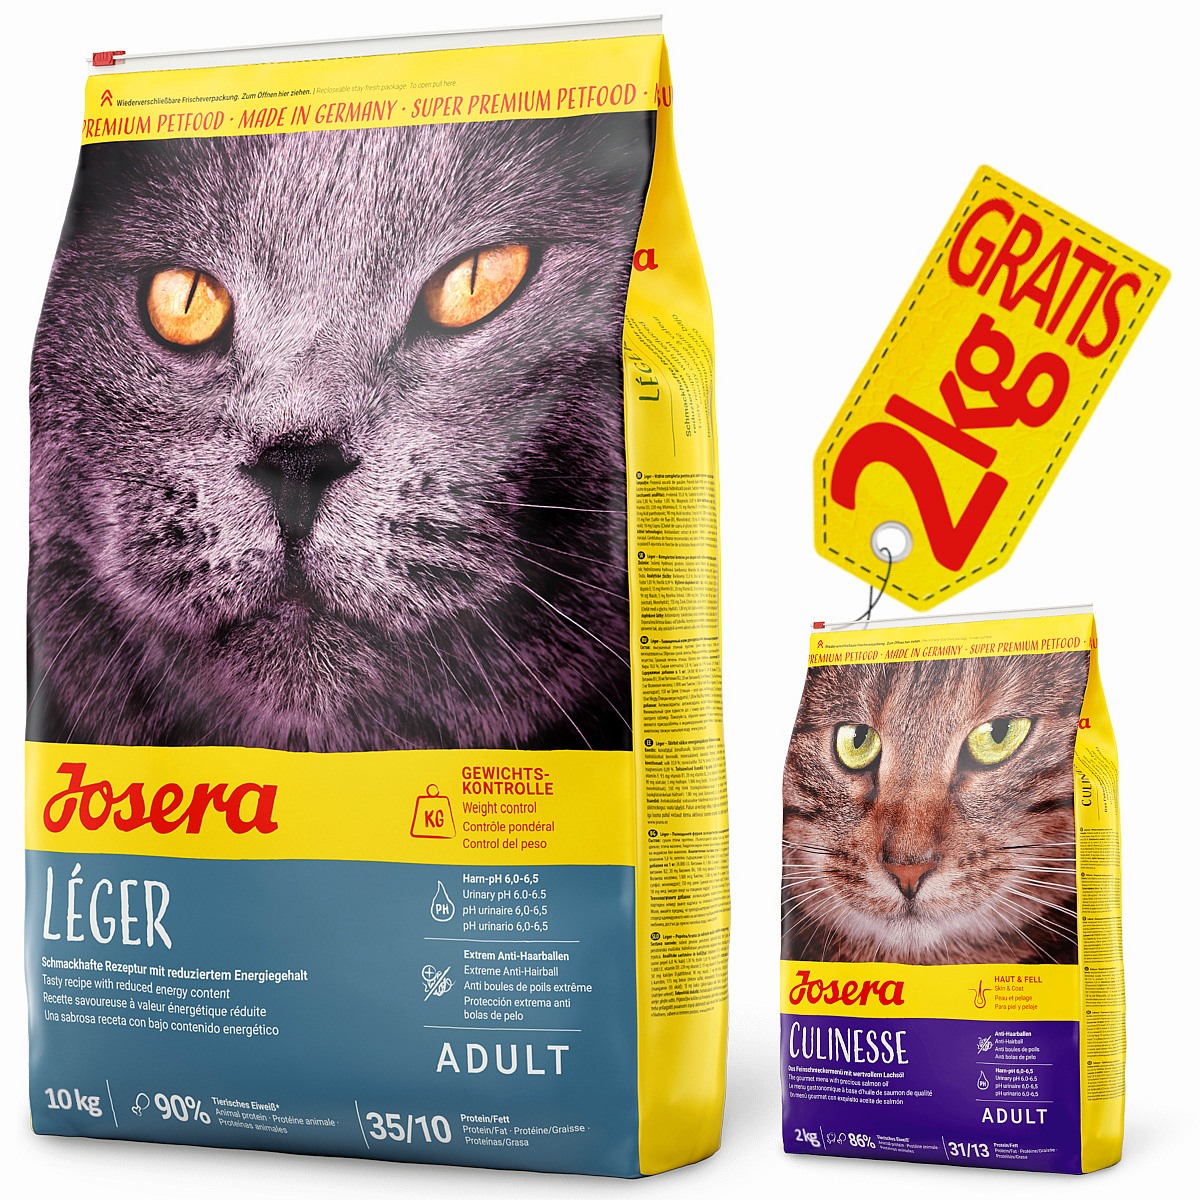 Josera LEGER 10 kg karma light dla kota z nadwagą wykastrowanego + GRATIS Josera Culinesse 2kg - Josera zdjęcie 1